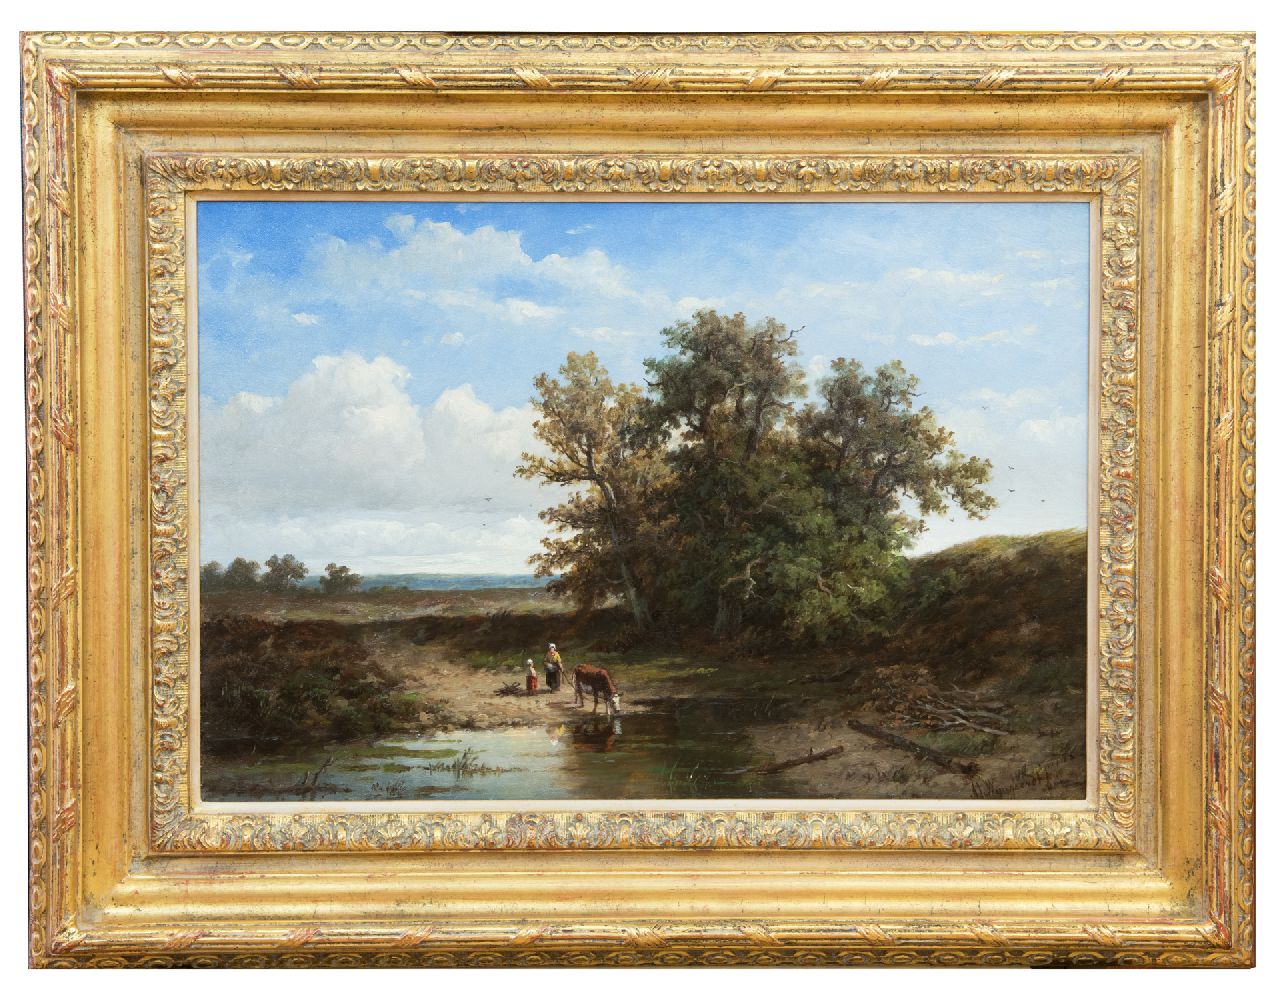 Wijngaerdt A.J. van | Anthonie Jacobus van Wijngaerdt | Schilderijen te koop aangeboden | Boerin met drinkende koe bij een vennetje, olieverf op doek 37,2 x 54,4 cm, gesigneerd rechtsonder